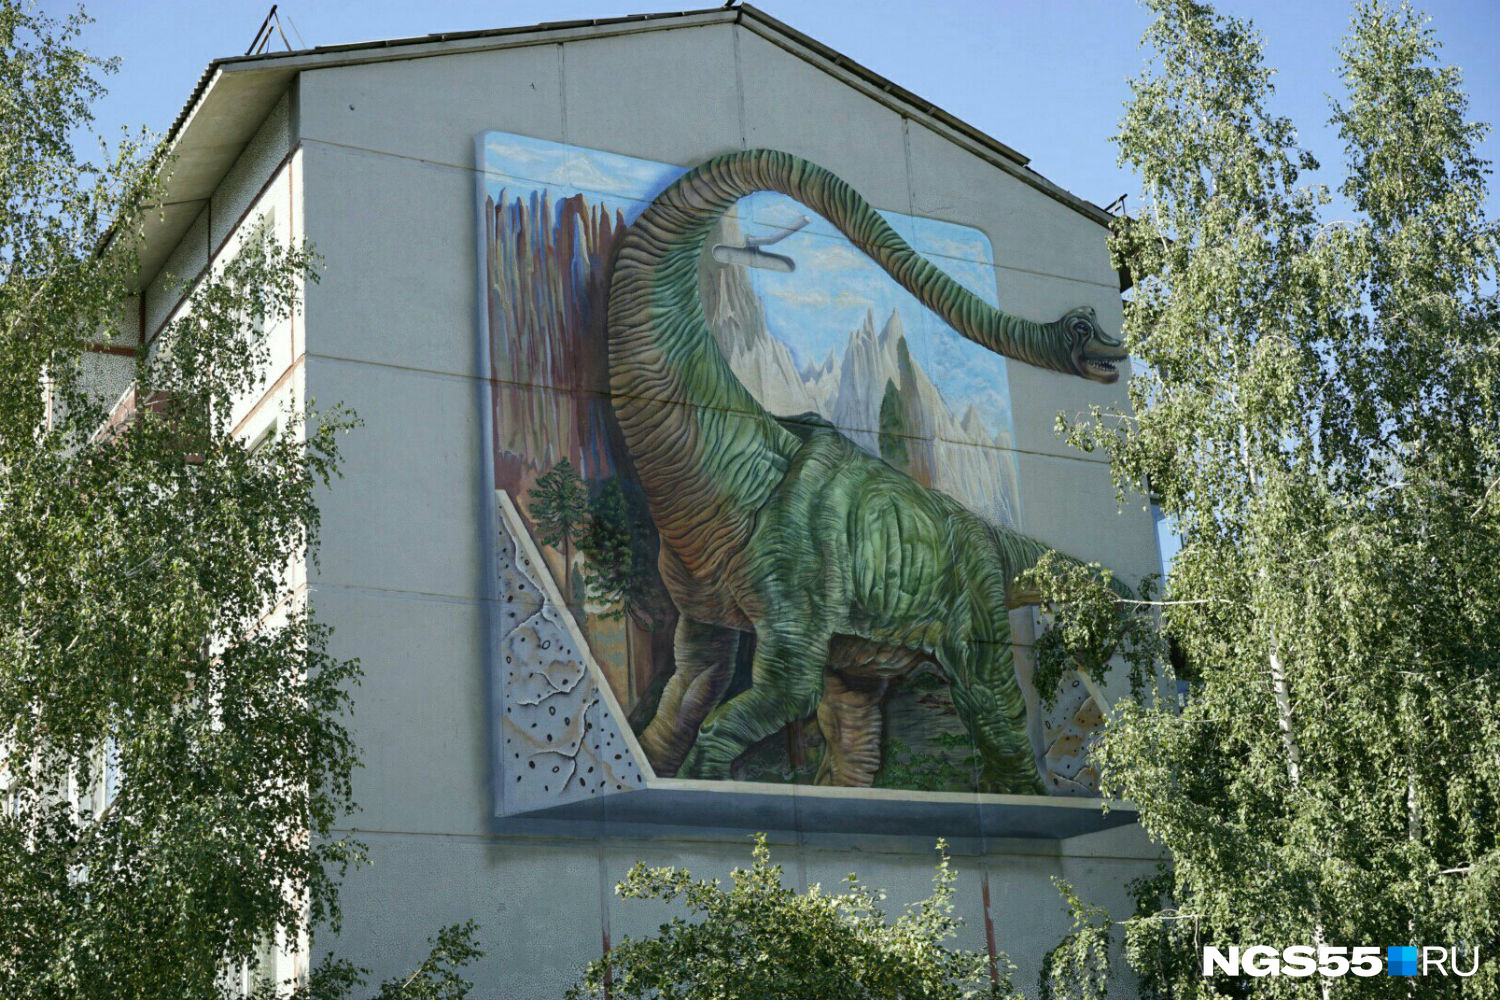 Дом для динозавров